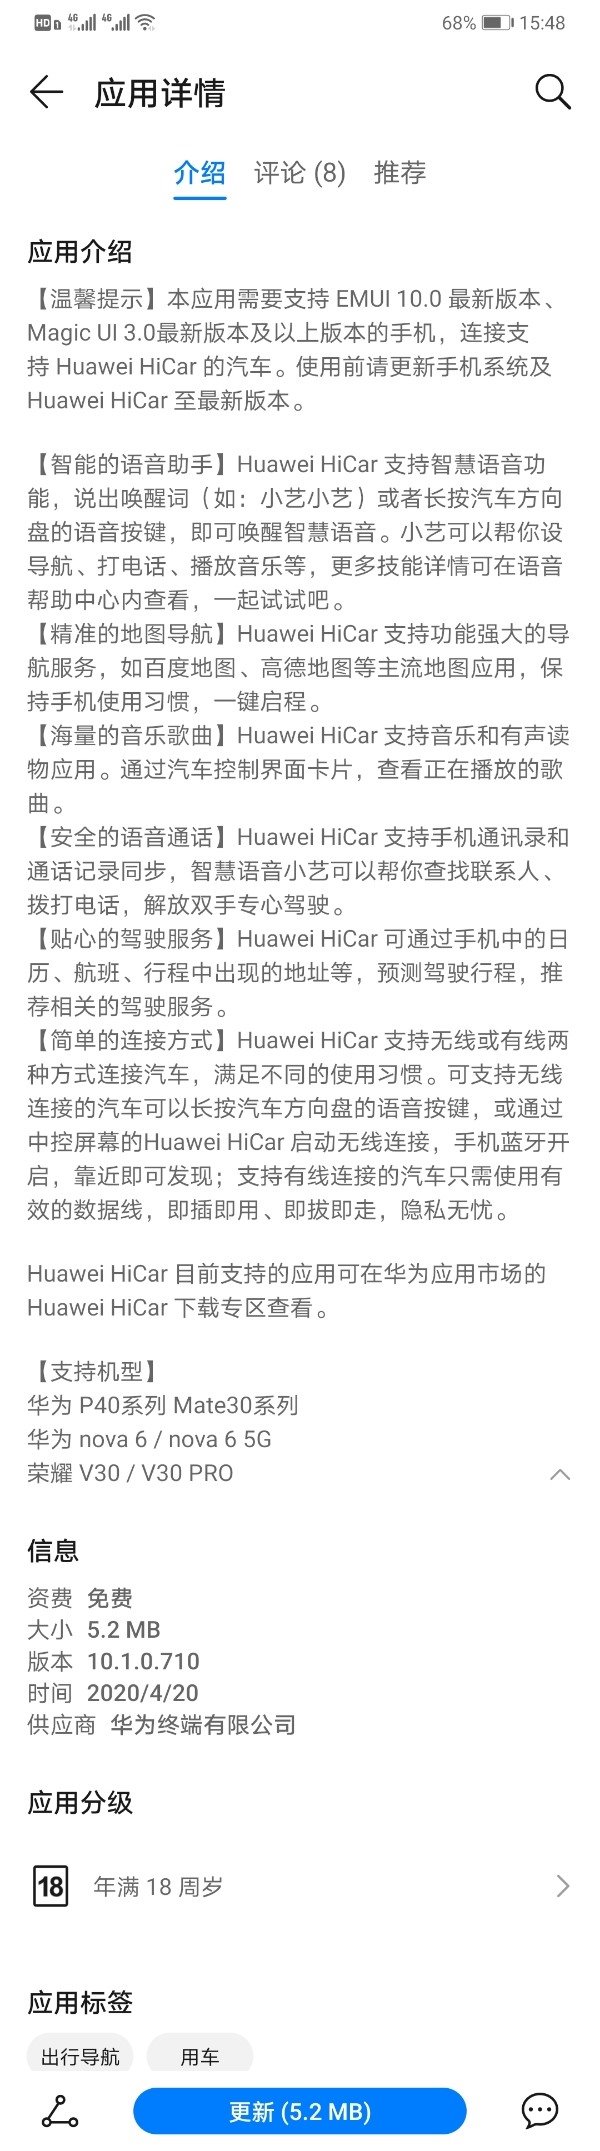 Huawei HiCar App